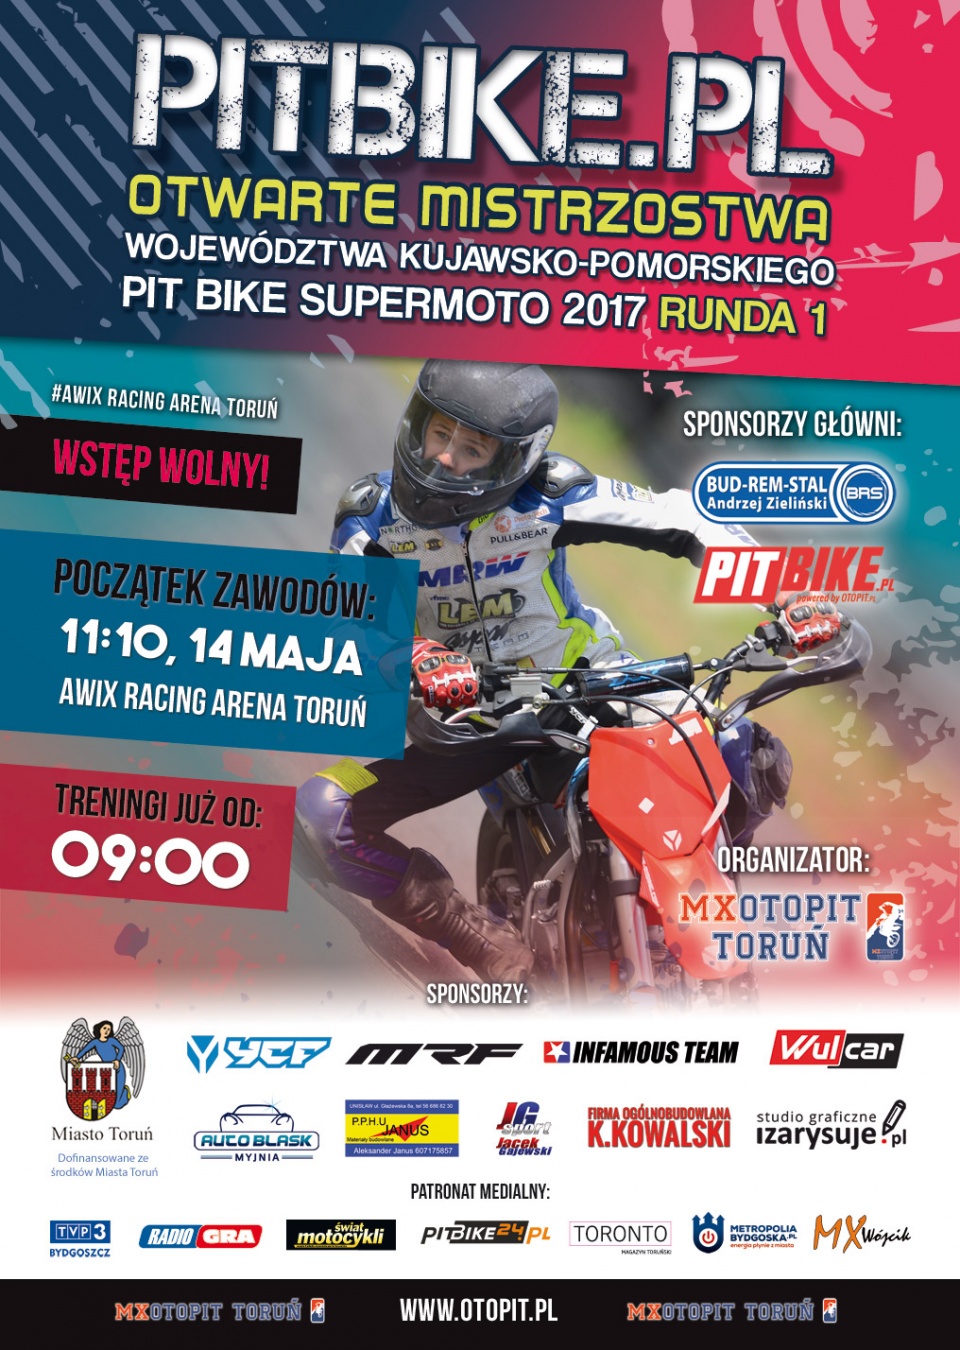 Plakat promujący zawody supermoto na pit bike 2017.